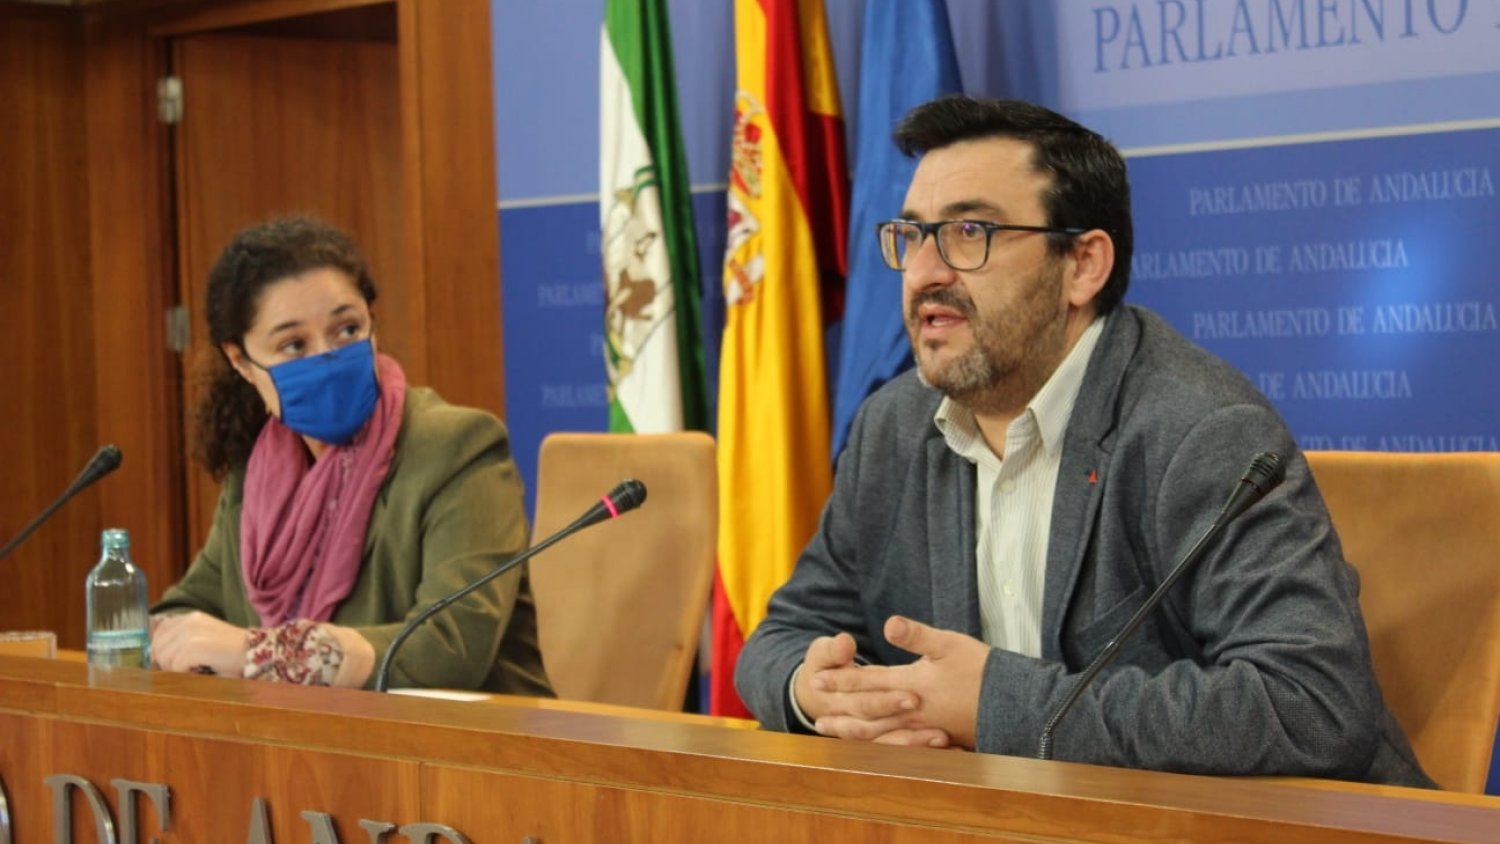 El diputado malagueño Ahumada es designado portavoz adjunto del grupo parlamentario Adelante Andalucía